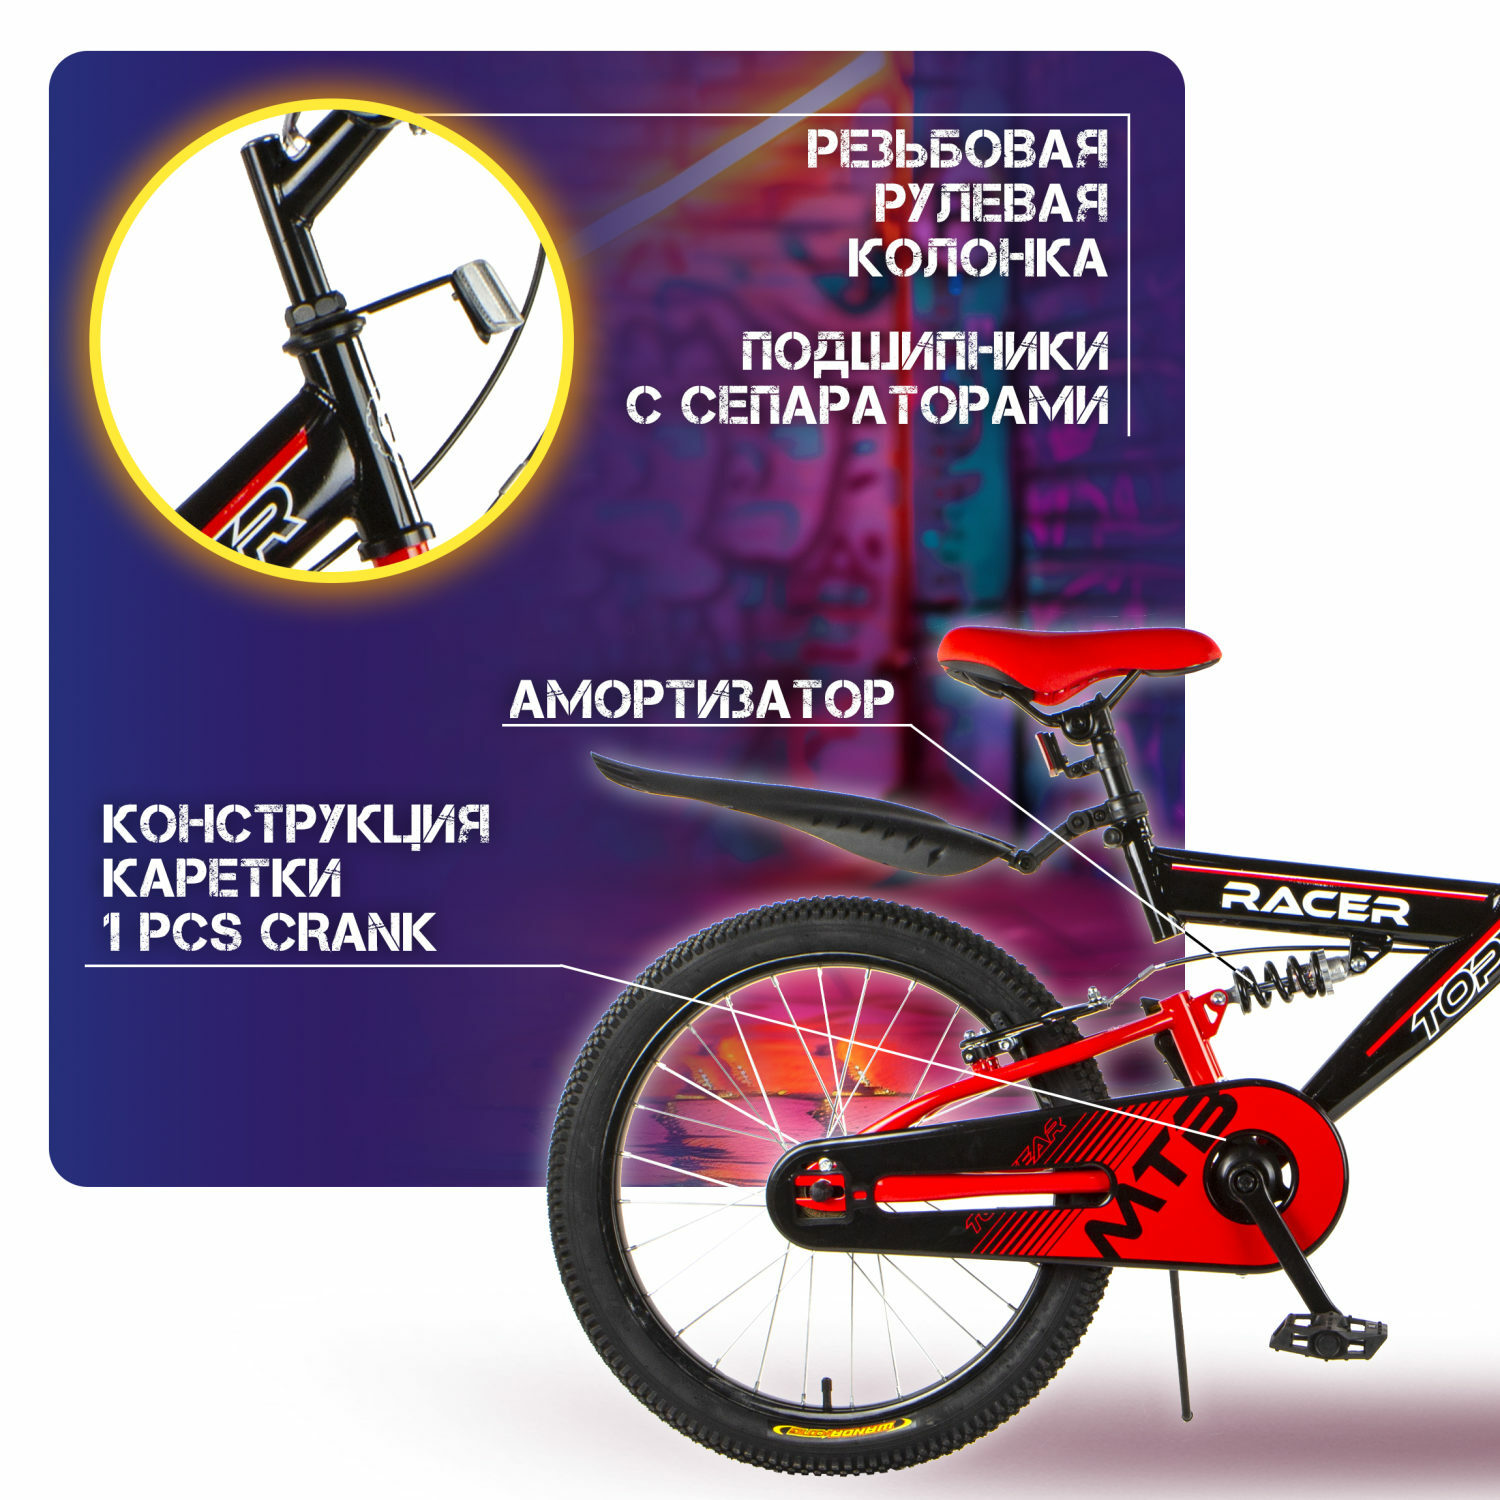 Велосипед TOPGEAR Racer 20 дюймов двухколесный городской с амортизатором тормозом V-brake красный - фото 7